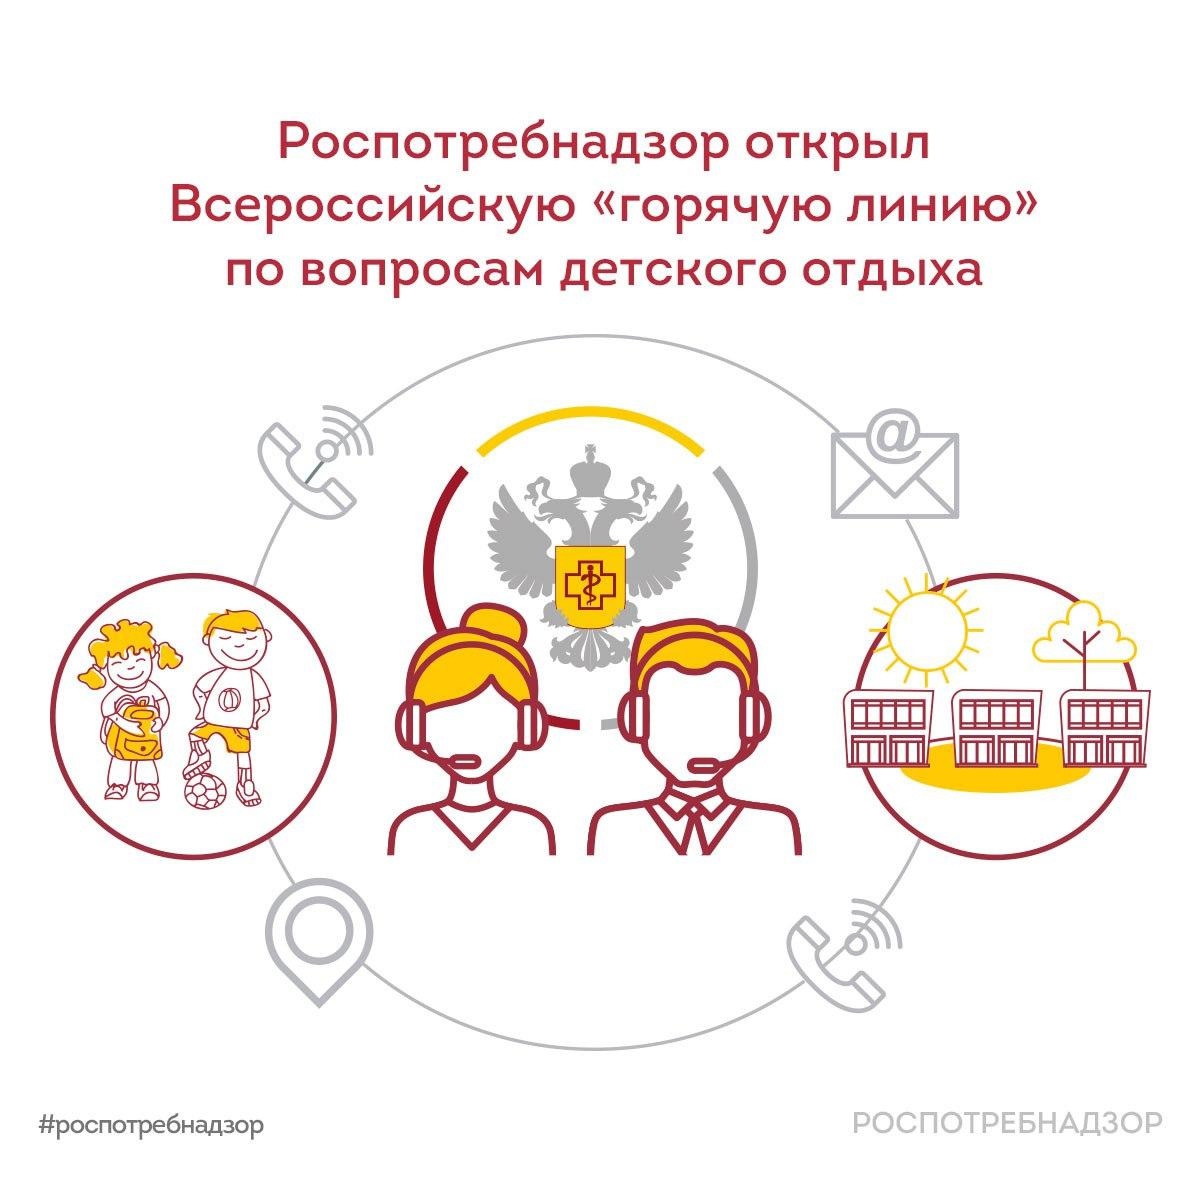 Роспотребнадзор открыл Всероссийскую «горячую линию» по вопросам детского отдыха.